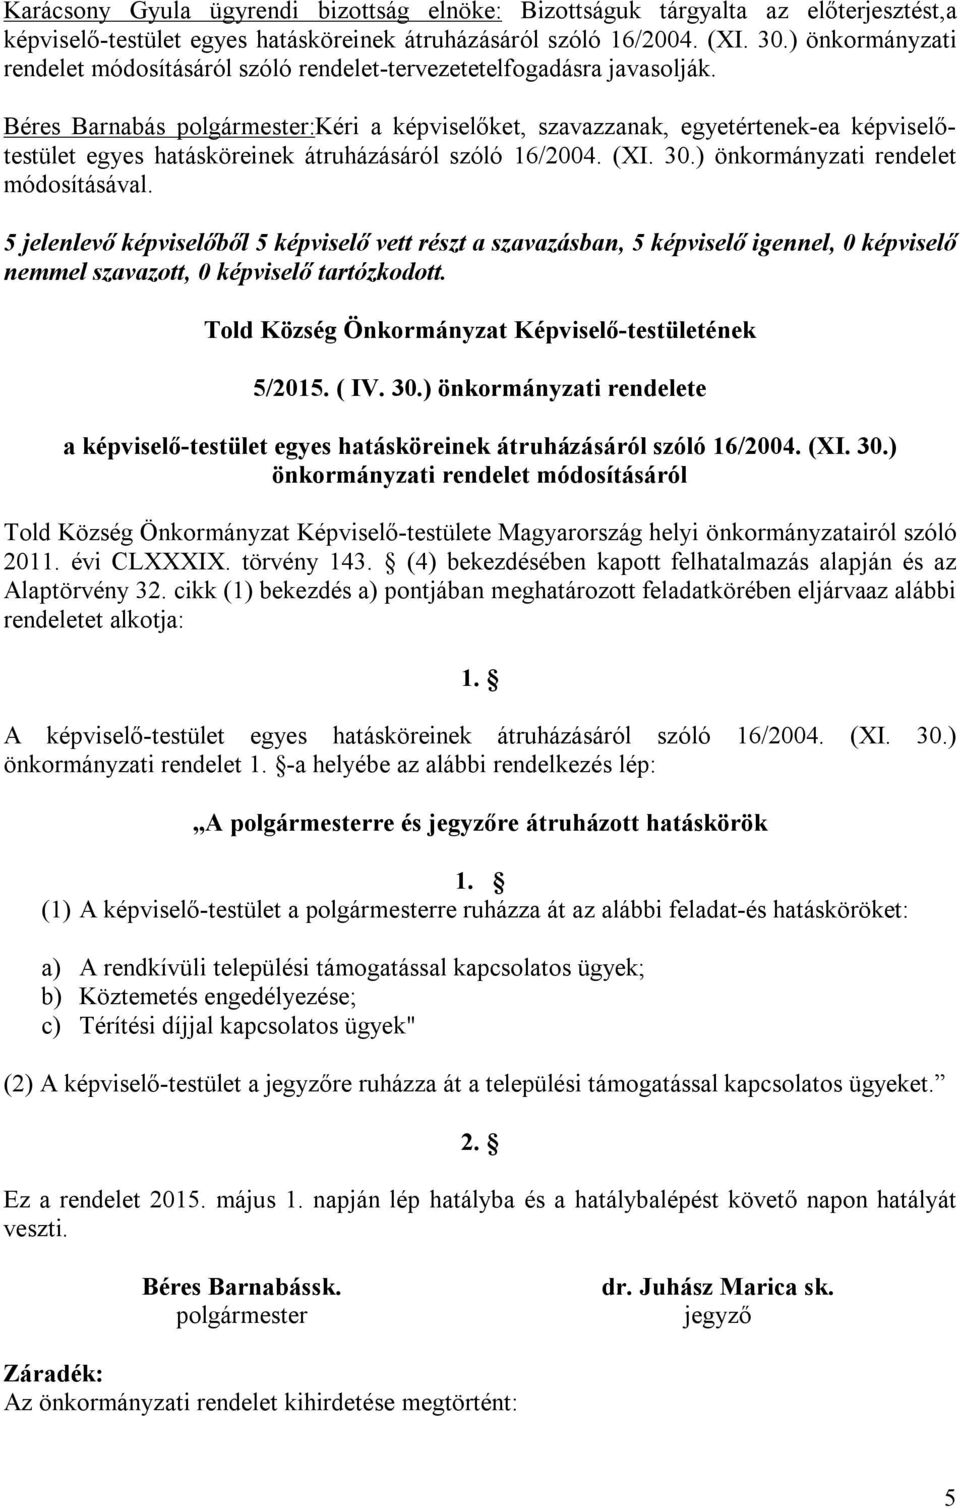 Béres Barnabás polgármester:kéri a képviselőket, szavazzanak, egyetértenek-ea képviselőtestület egyes hatásköreinek átruházásáról szóló 16/2004. (XI. 30.) önkormányzati rendelet módosításával.